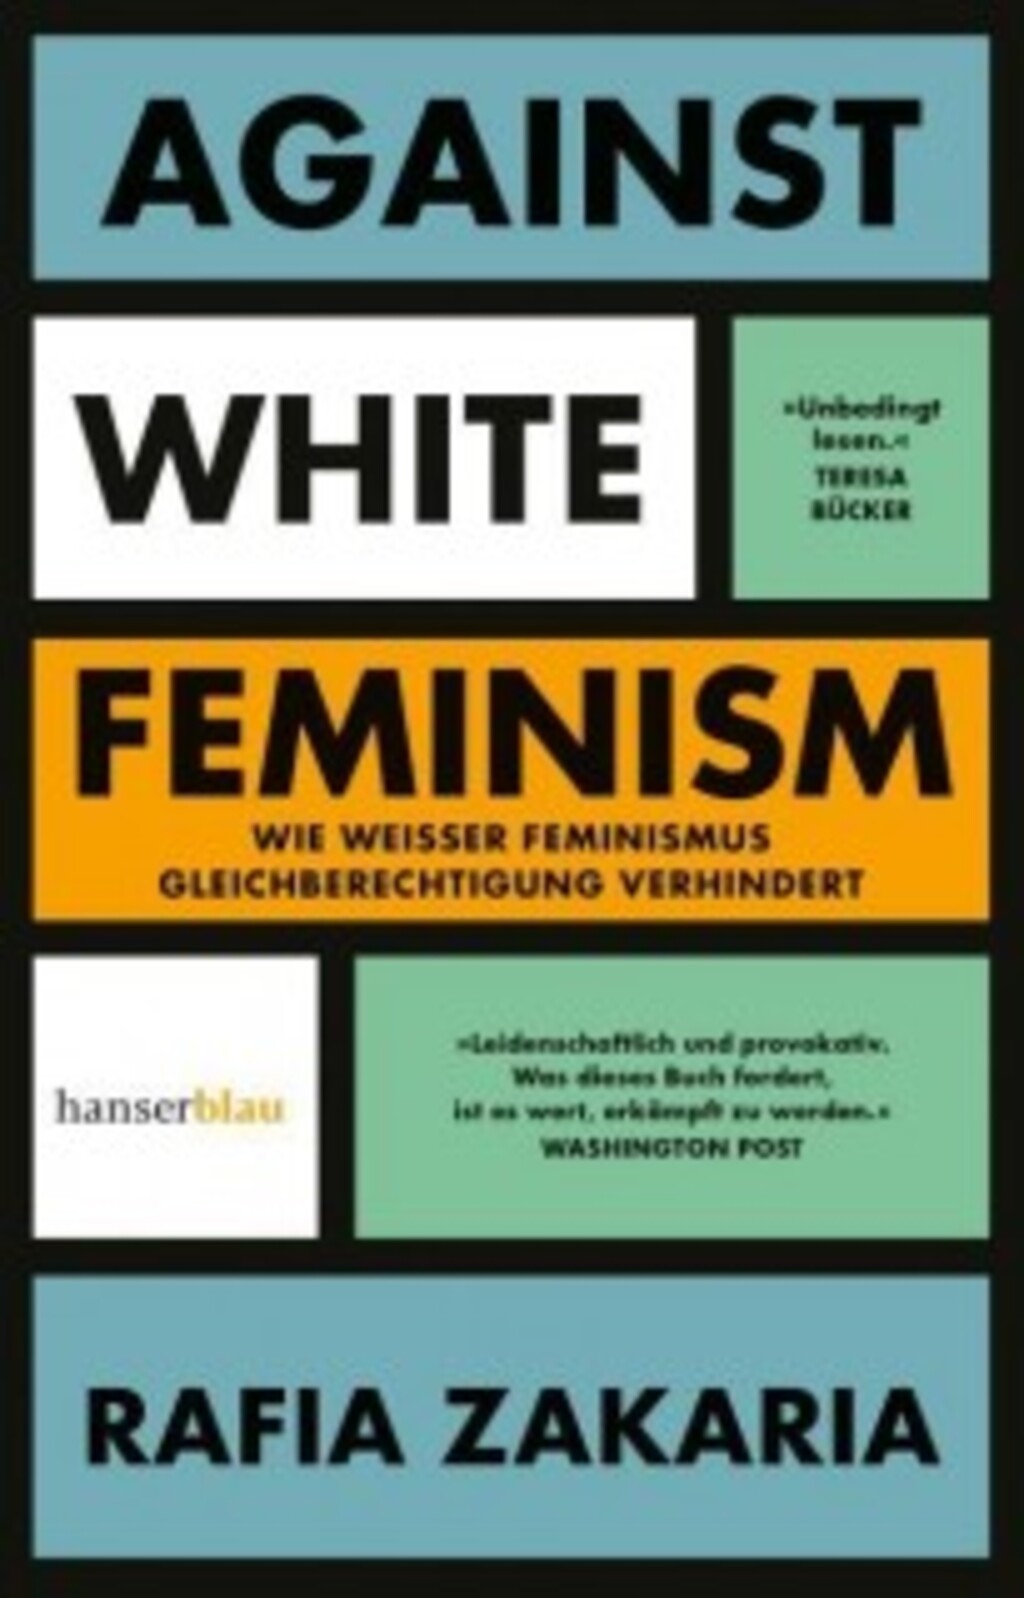 Cover von Rafia Zakarias "Against white Feminism", erschienen bei hanserblau 2022; Quelle: Verlag